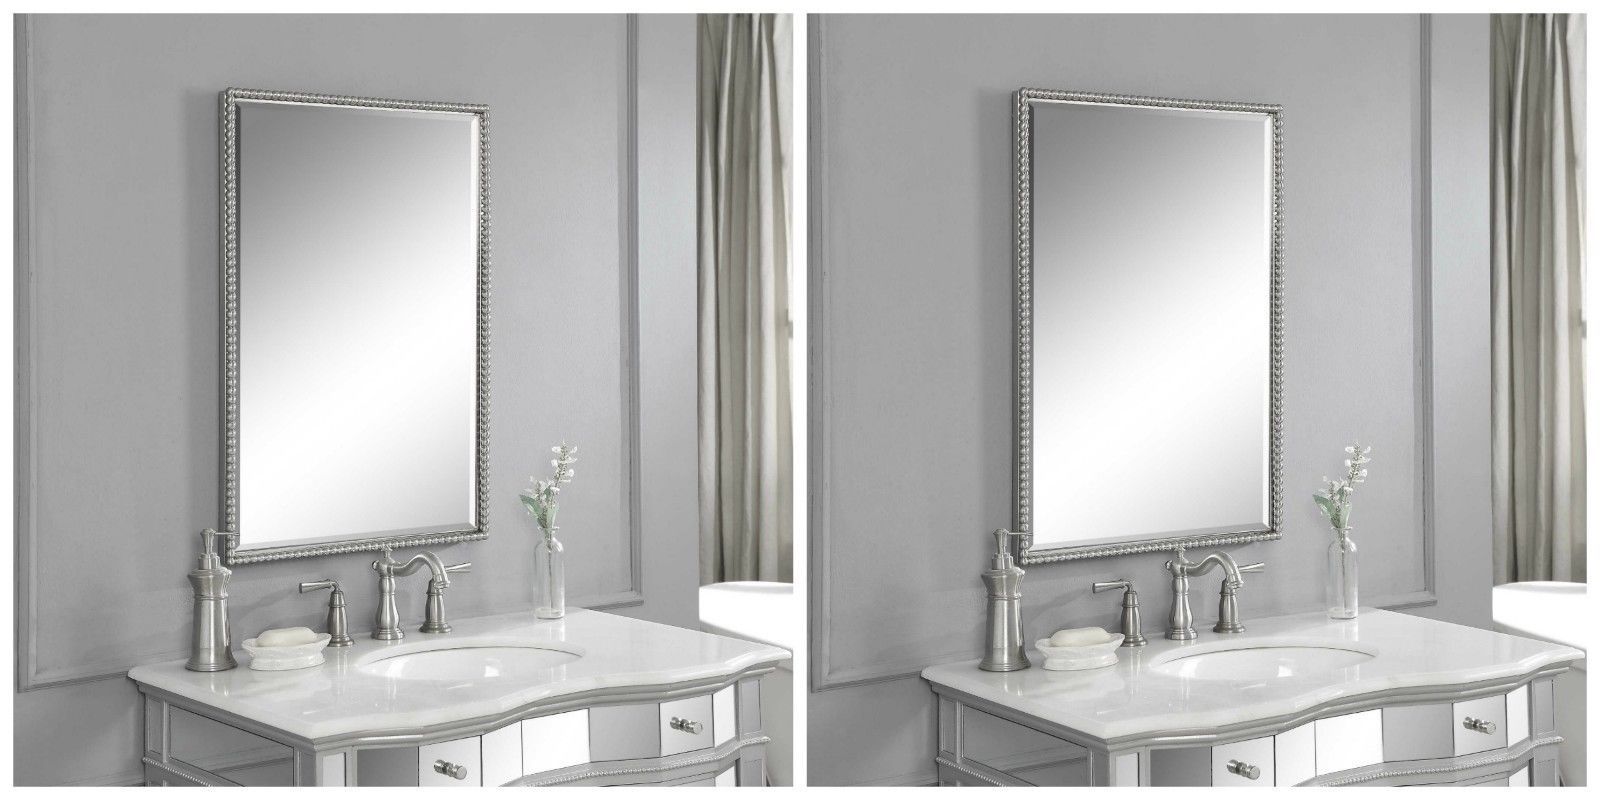 Brushed Nickel Vanity Mirrors For Bathroom